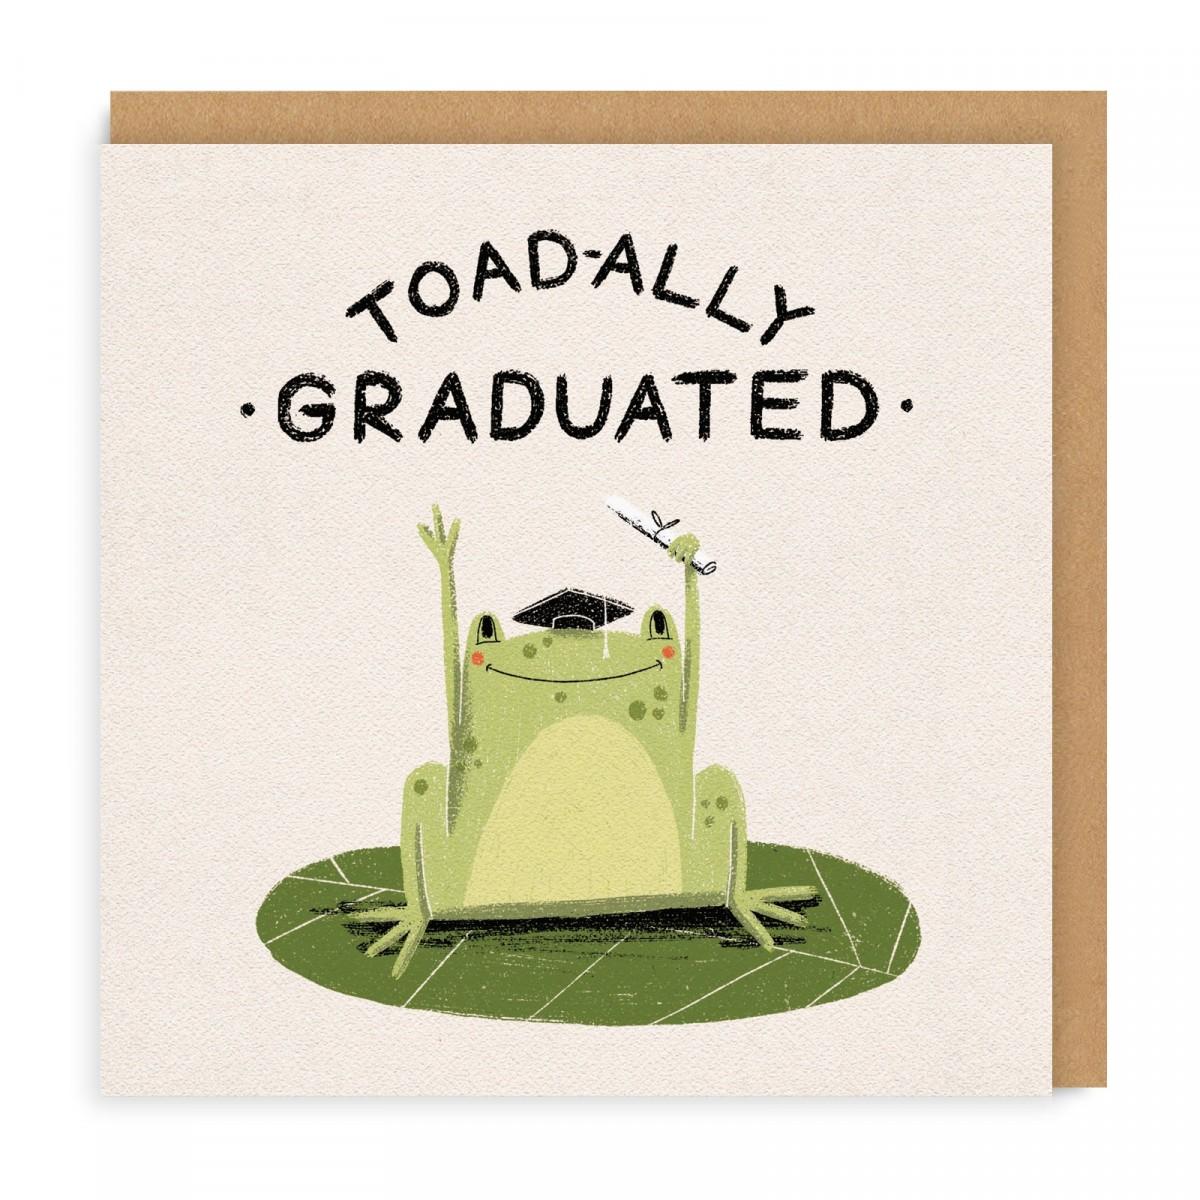 Õnnitluskaart Toadally Graduated